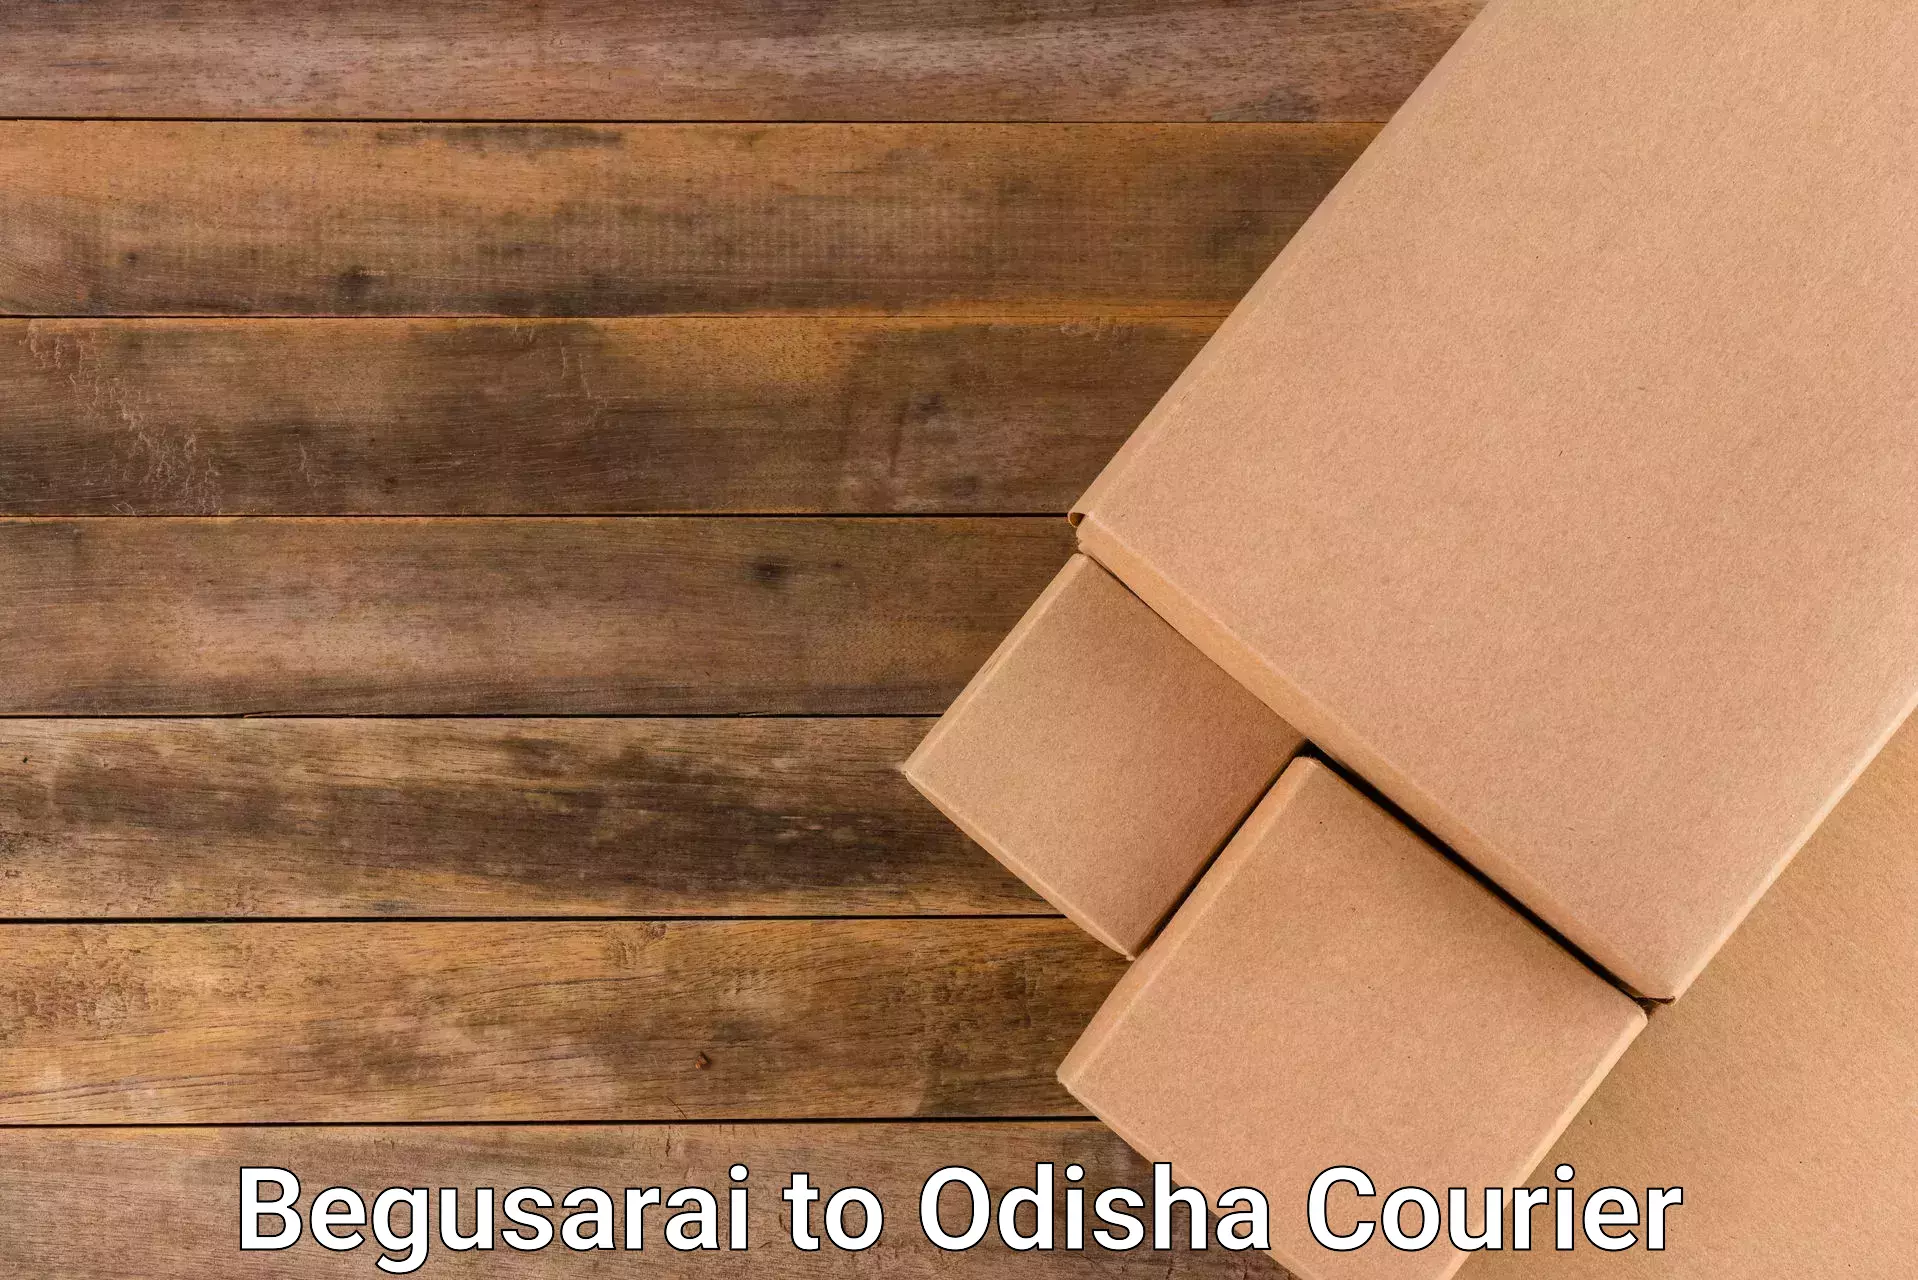 Air courier services Begusarai to Odisha